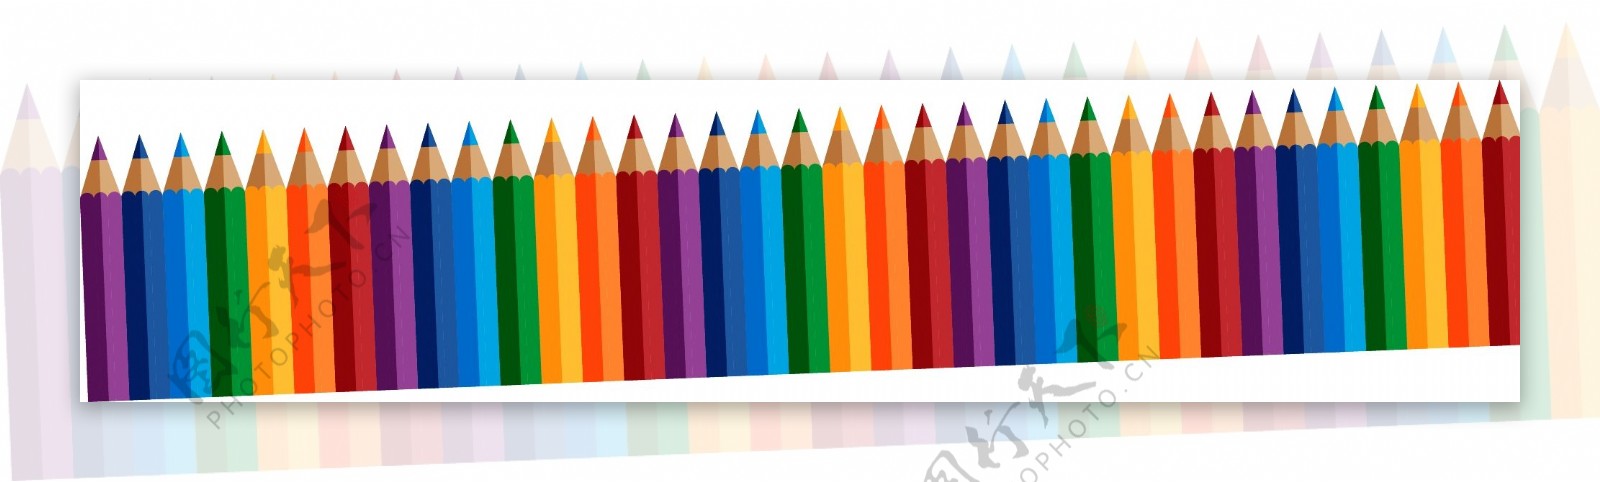 排列整齐的彩色铅笔矢量图